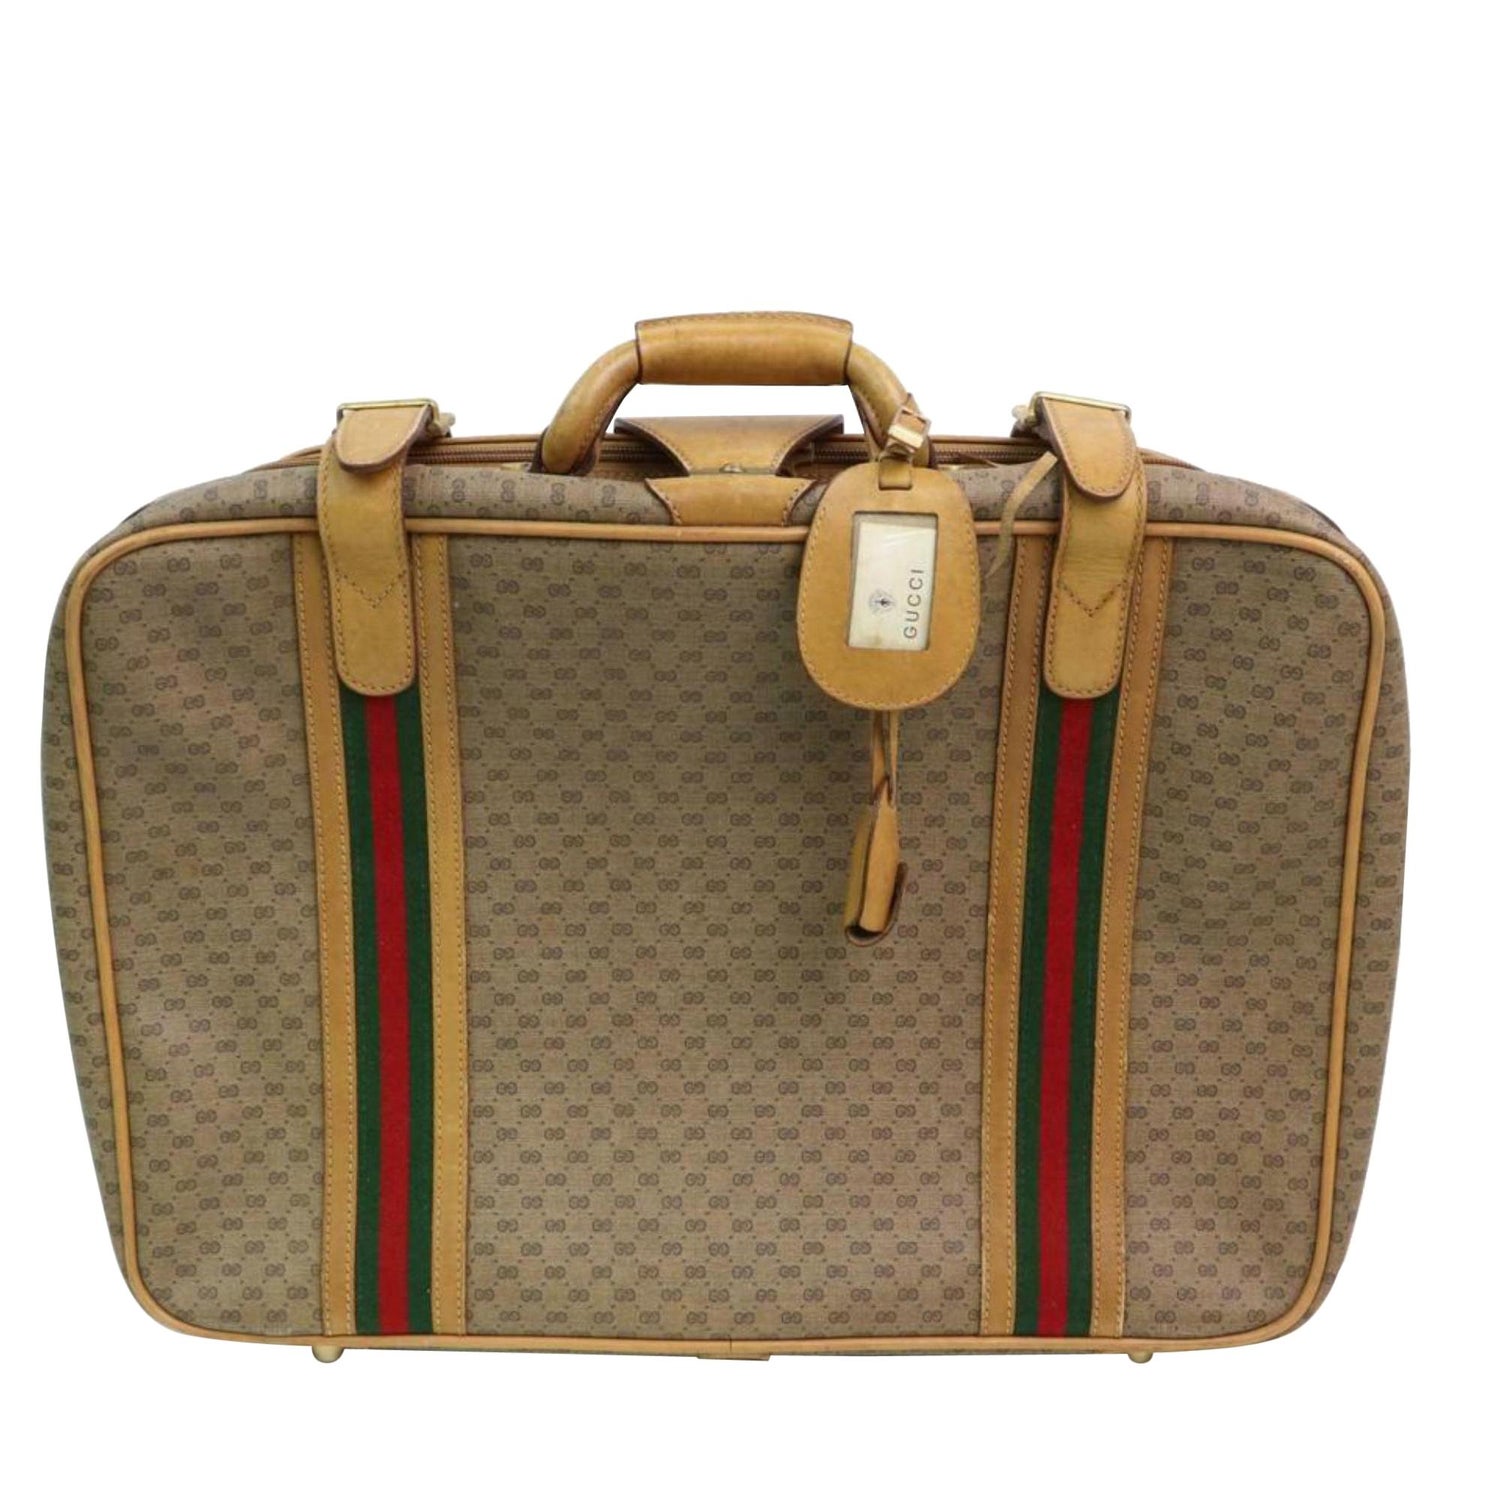 gucci #luggage #set  Gucci luggage set, Gucci luggage, Luxury